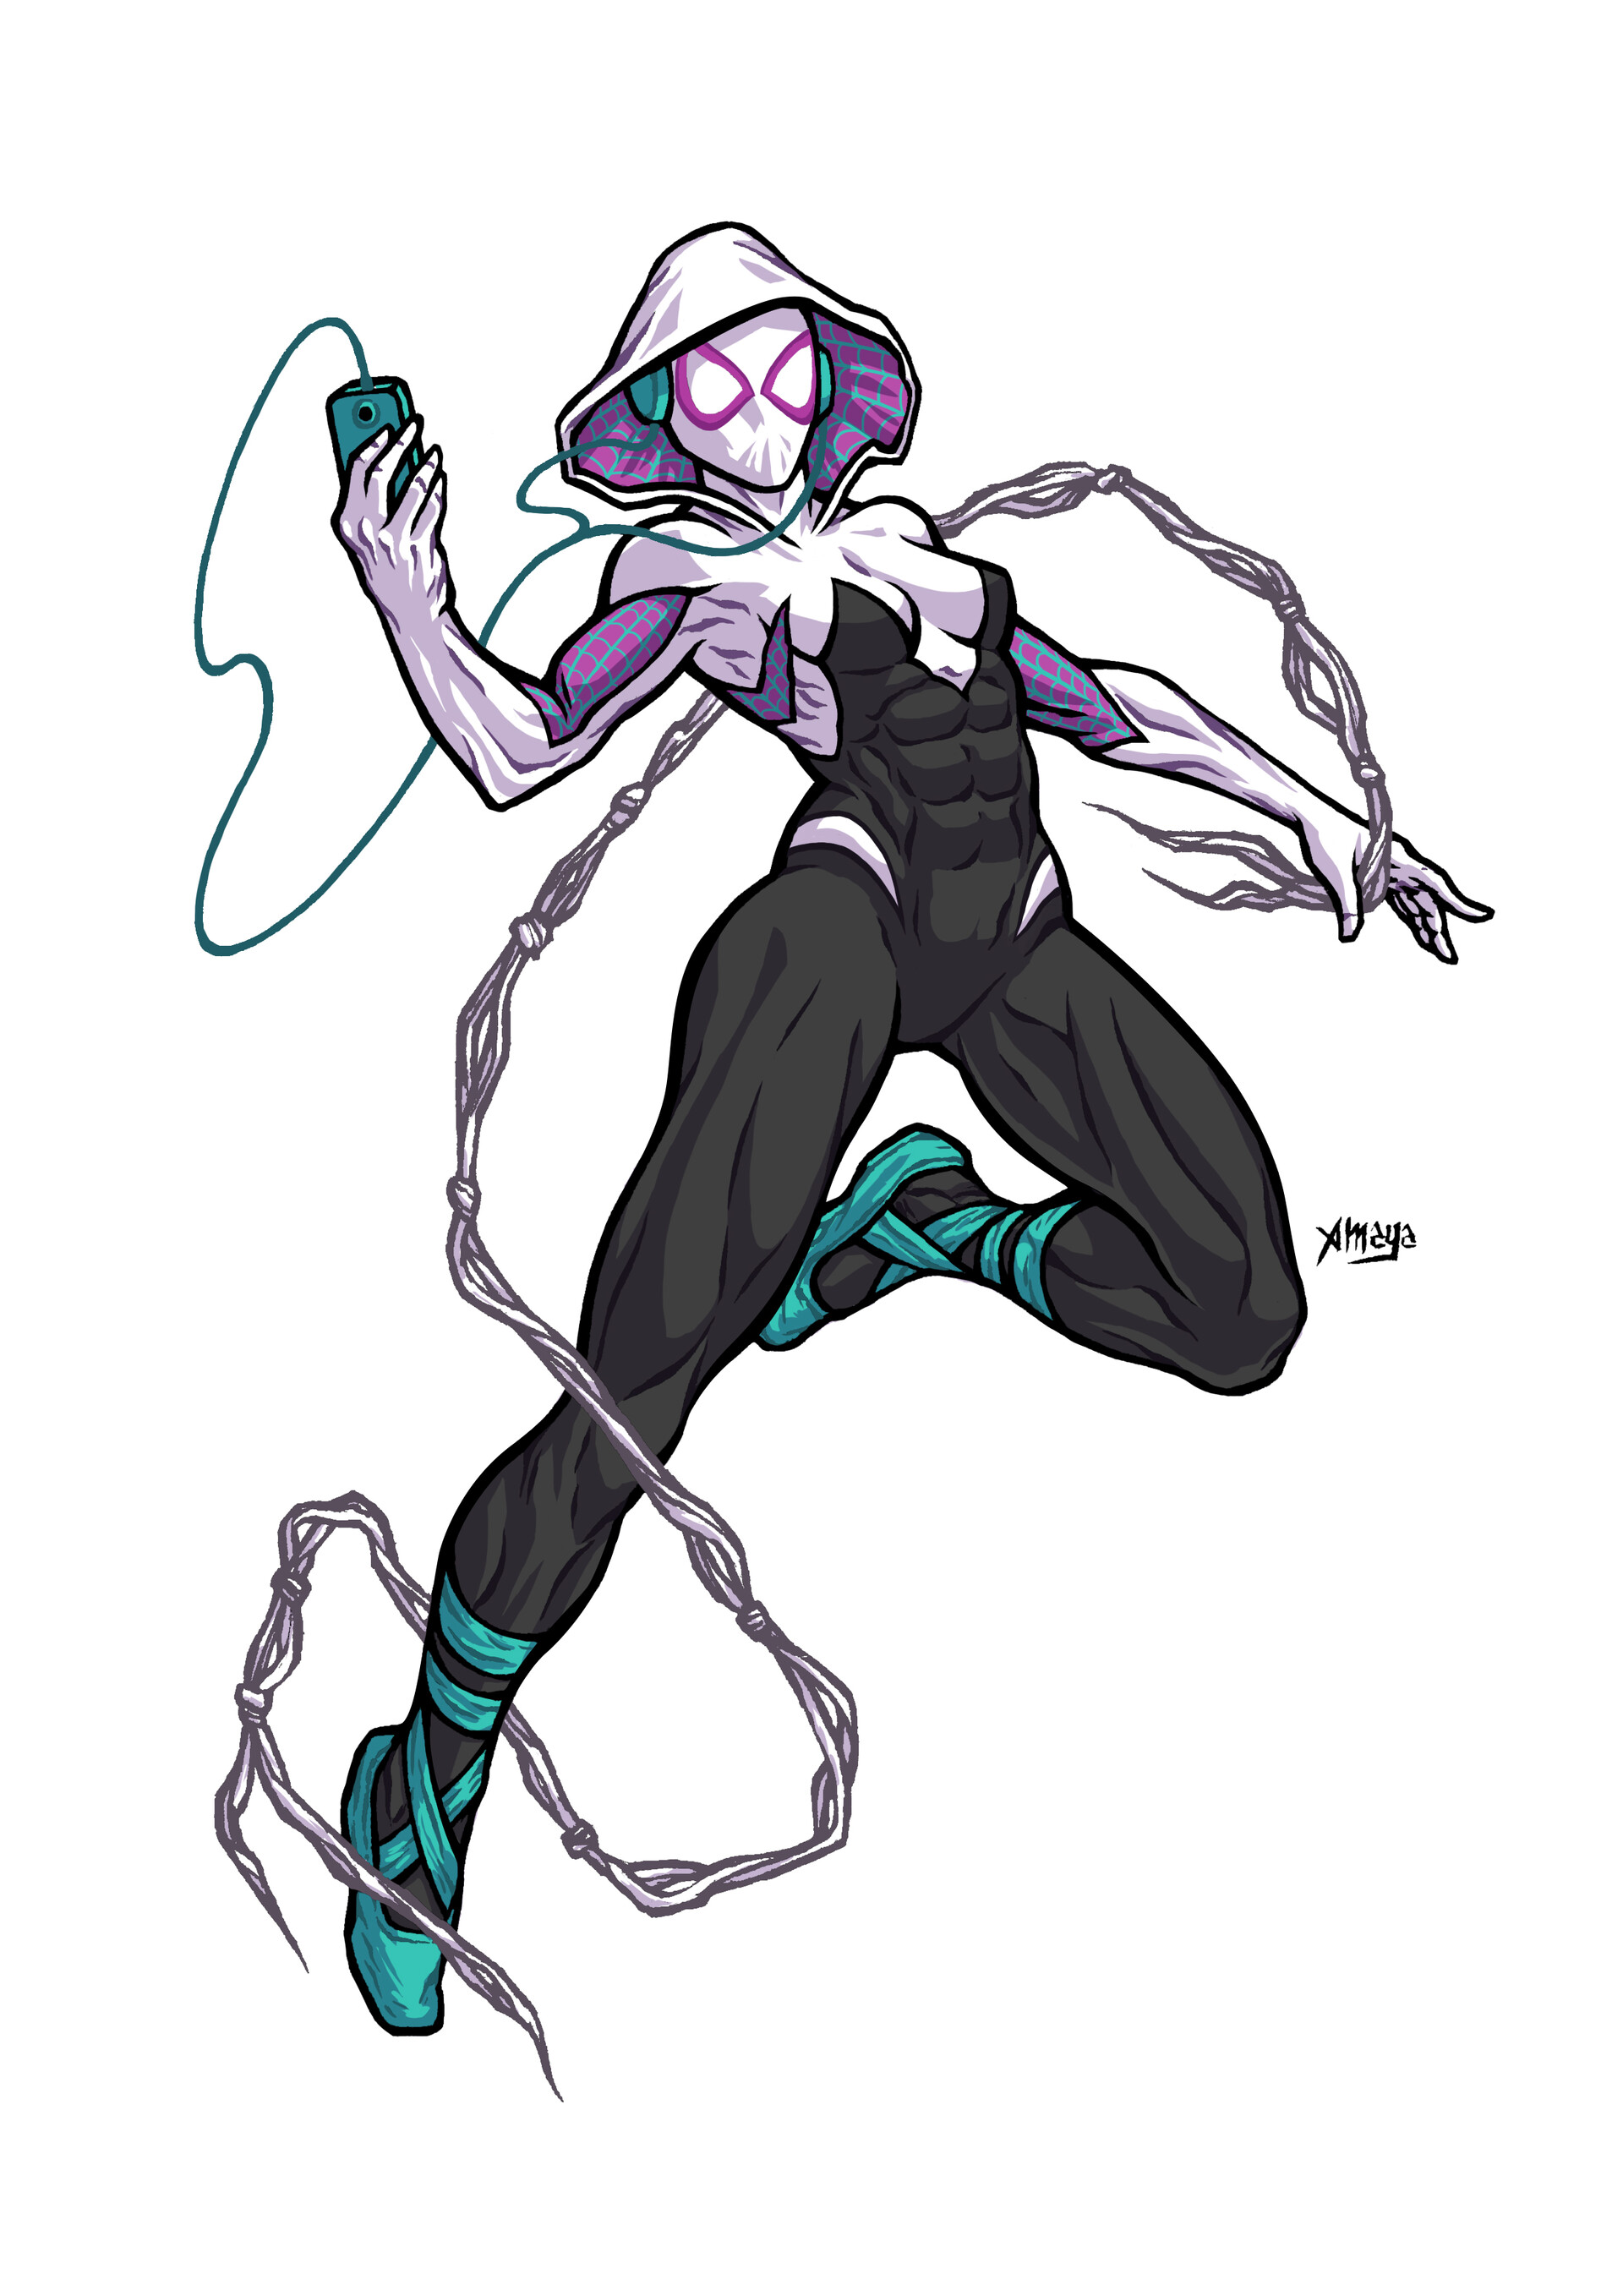 Spider-Gwen, Marvel: Ultimate Alliance Wiki